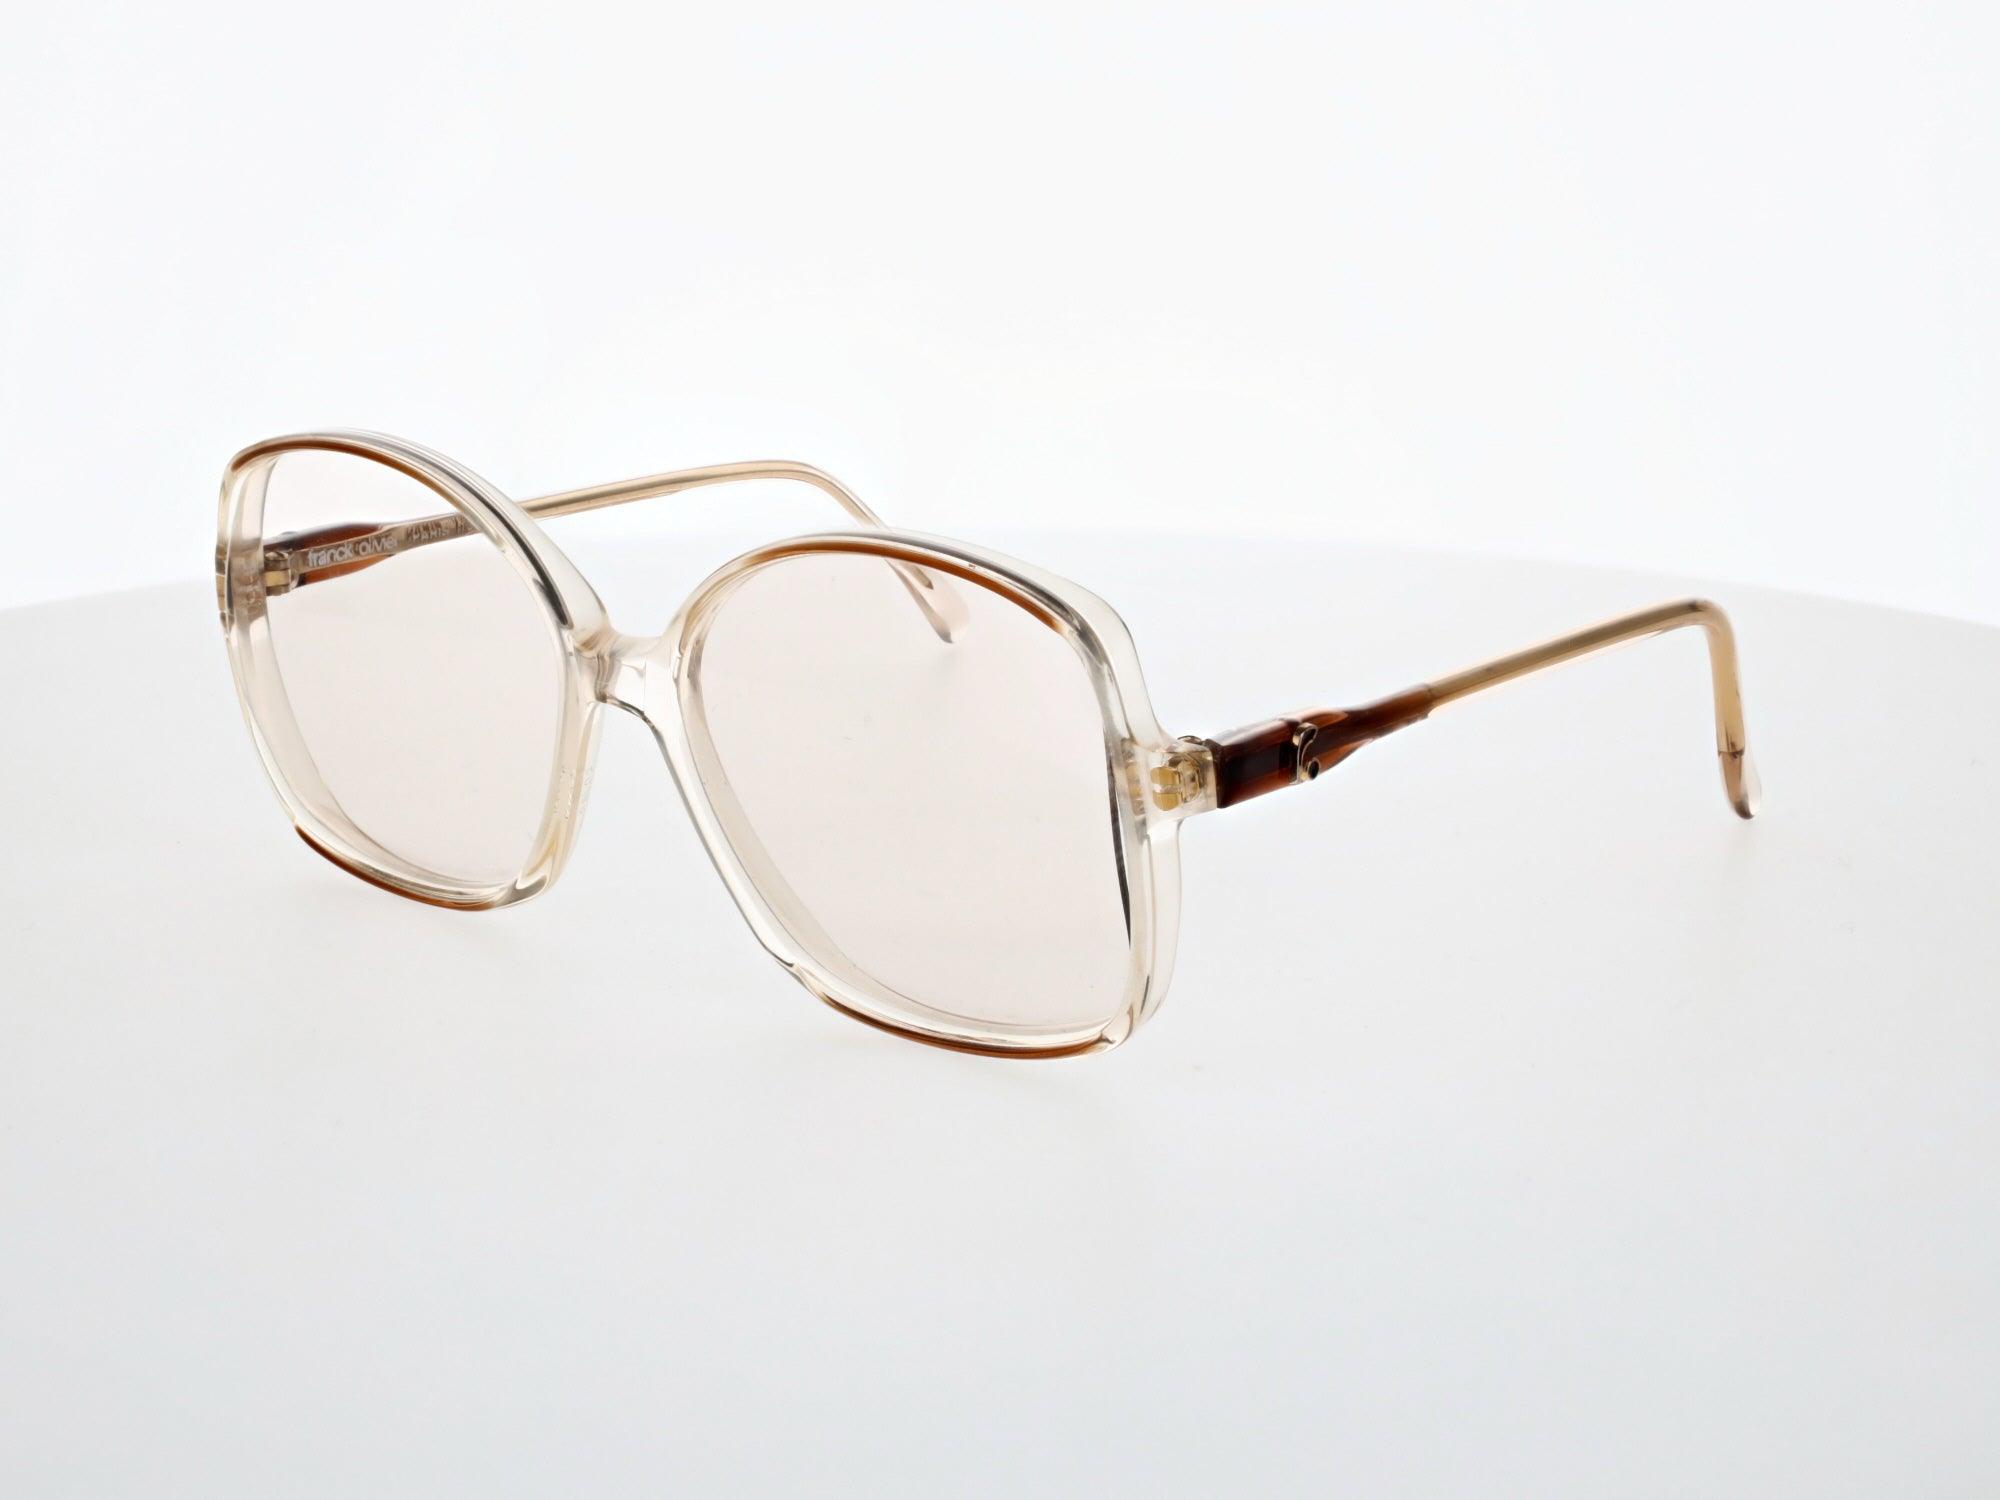 Franck Olivier Eyeglasses, 739 99 - Vision 770